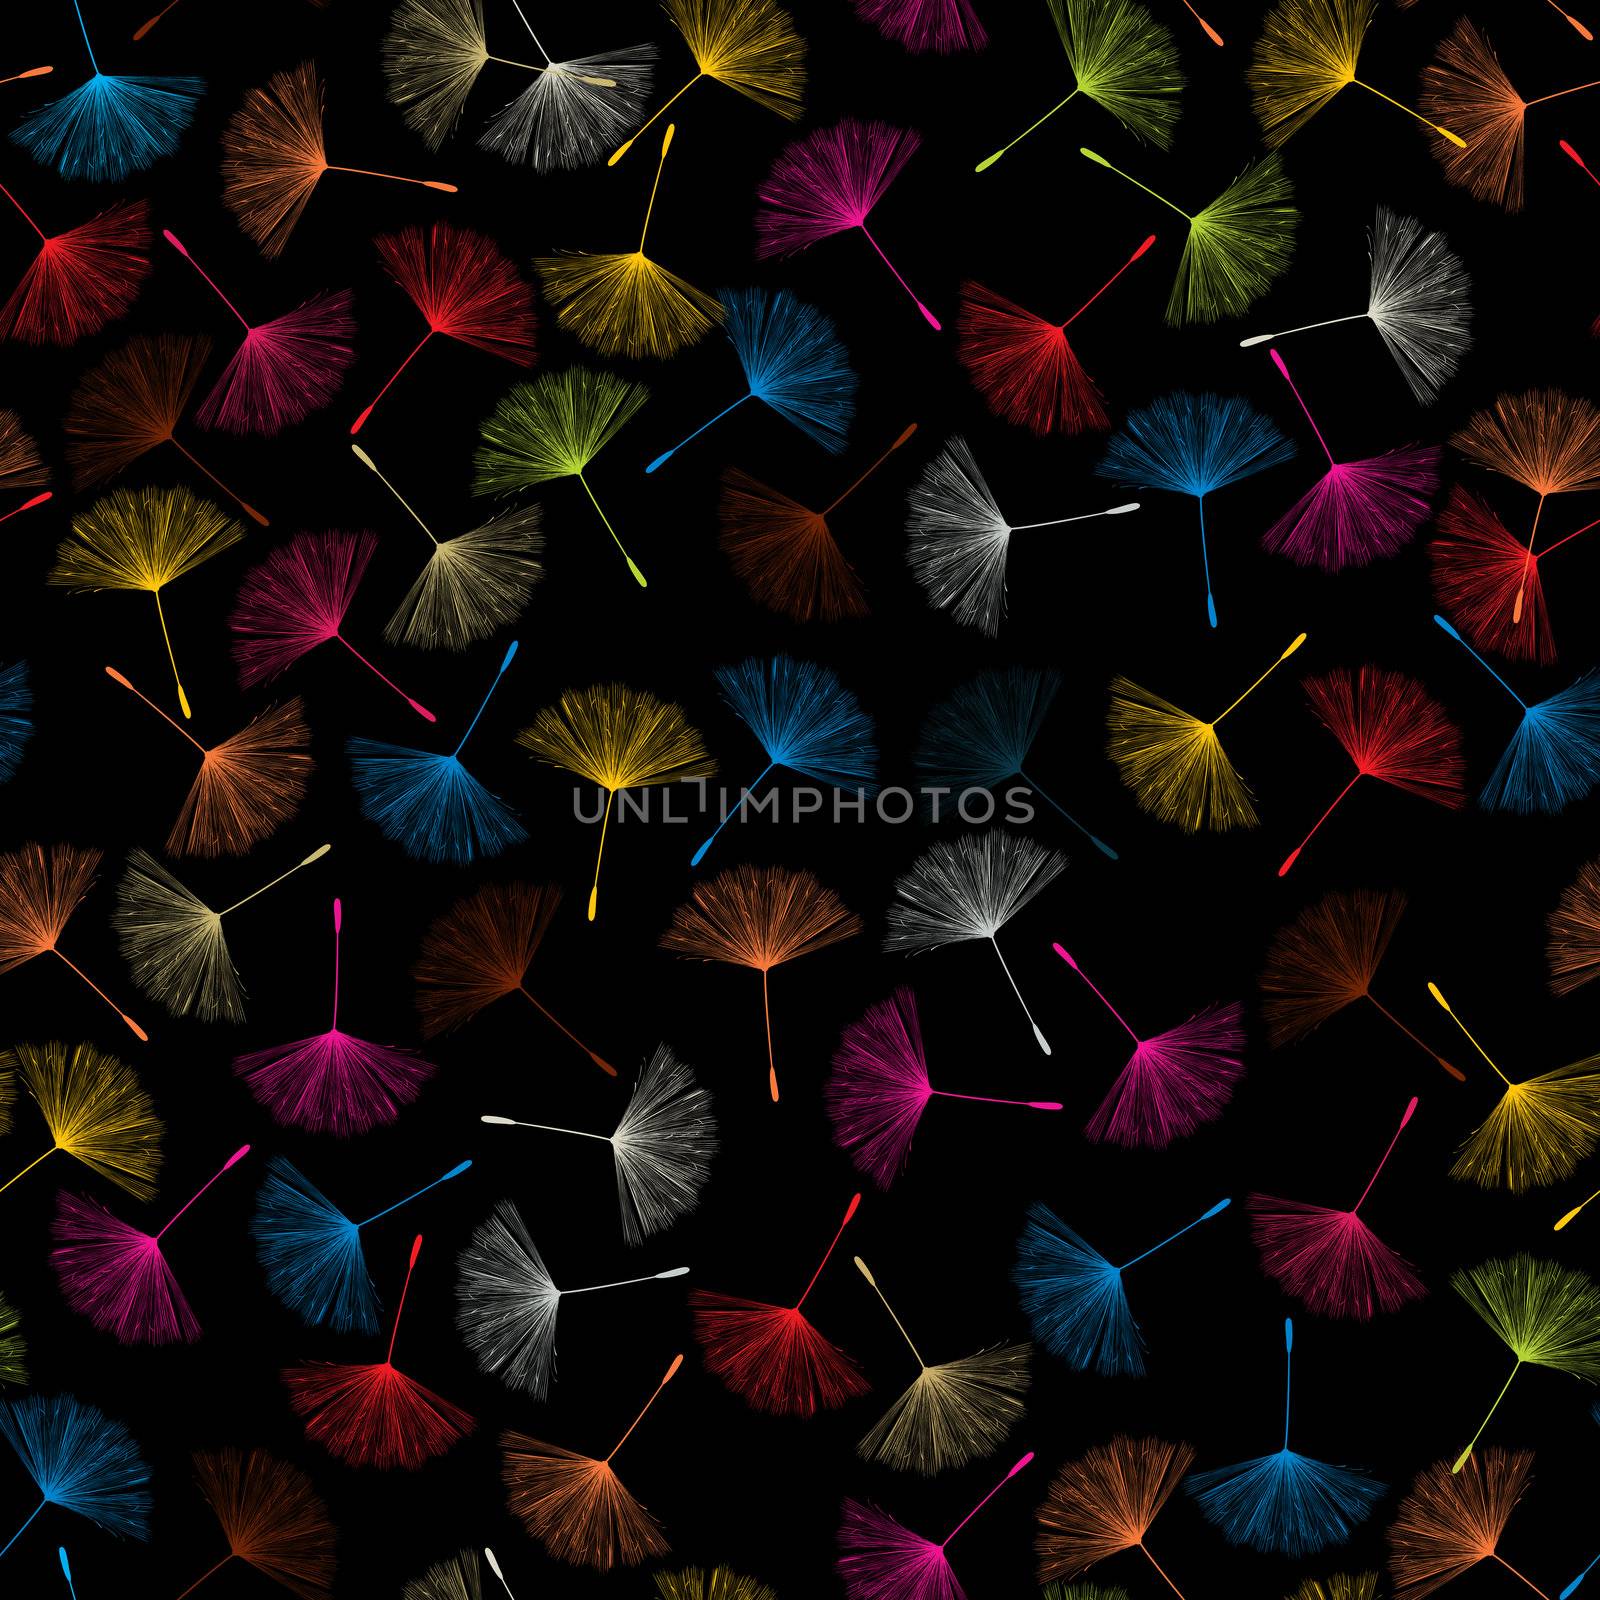 Dandelions seed pattern by Lirch